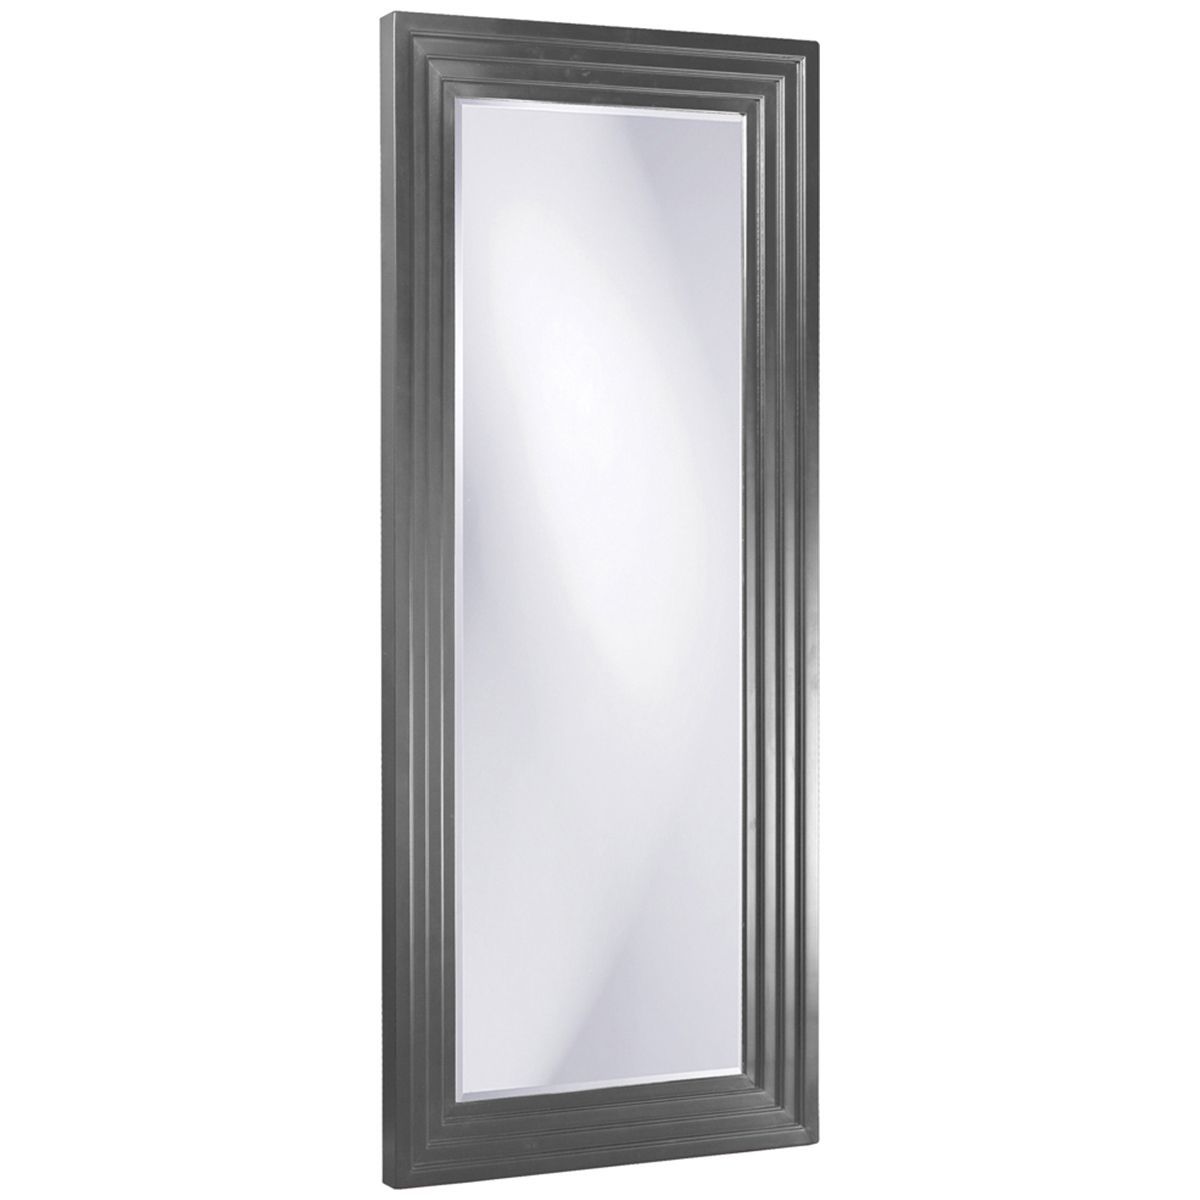 Howard Elliott Delano Charcoal Gray Tall Mirror 43057ch | Mirror Decor Inside Charcoal Gray Wall Mirrors (View 11 of 15)